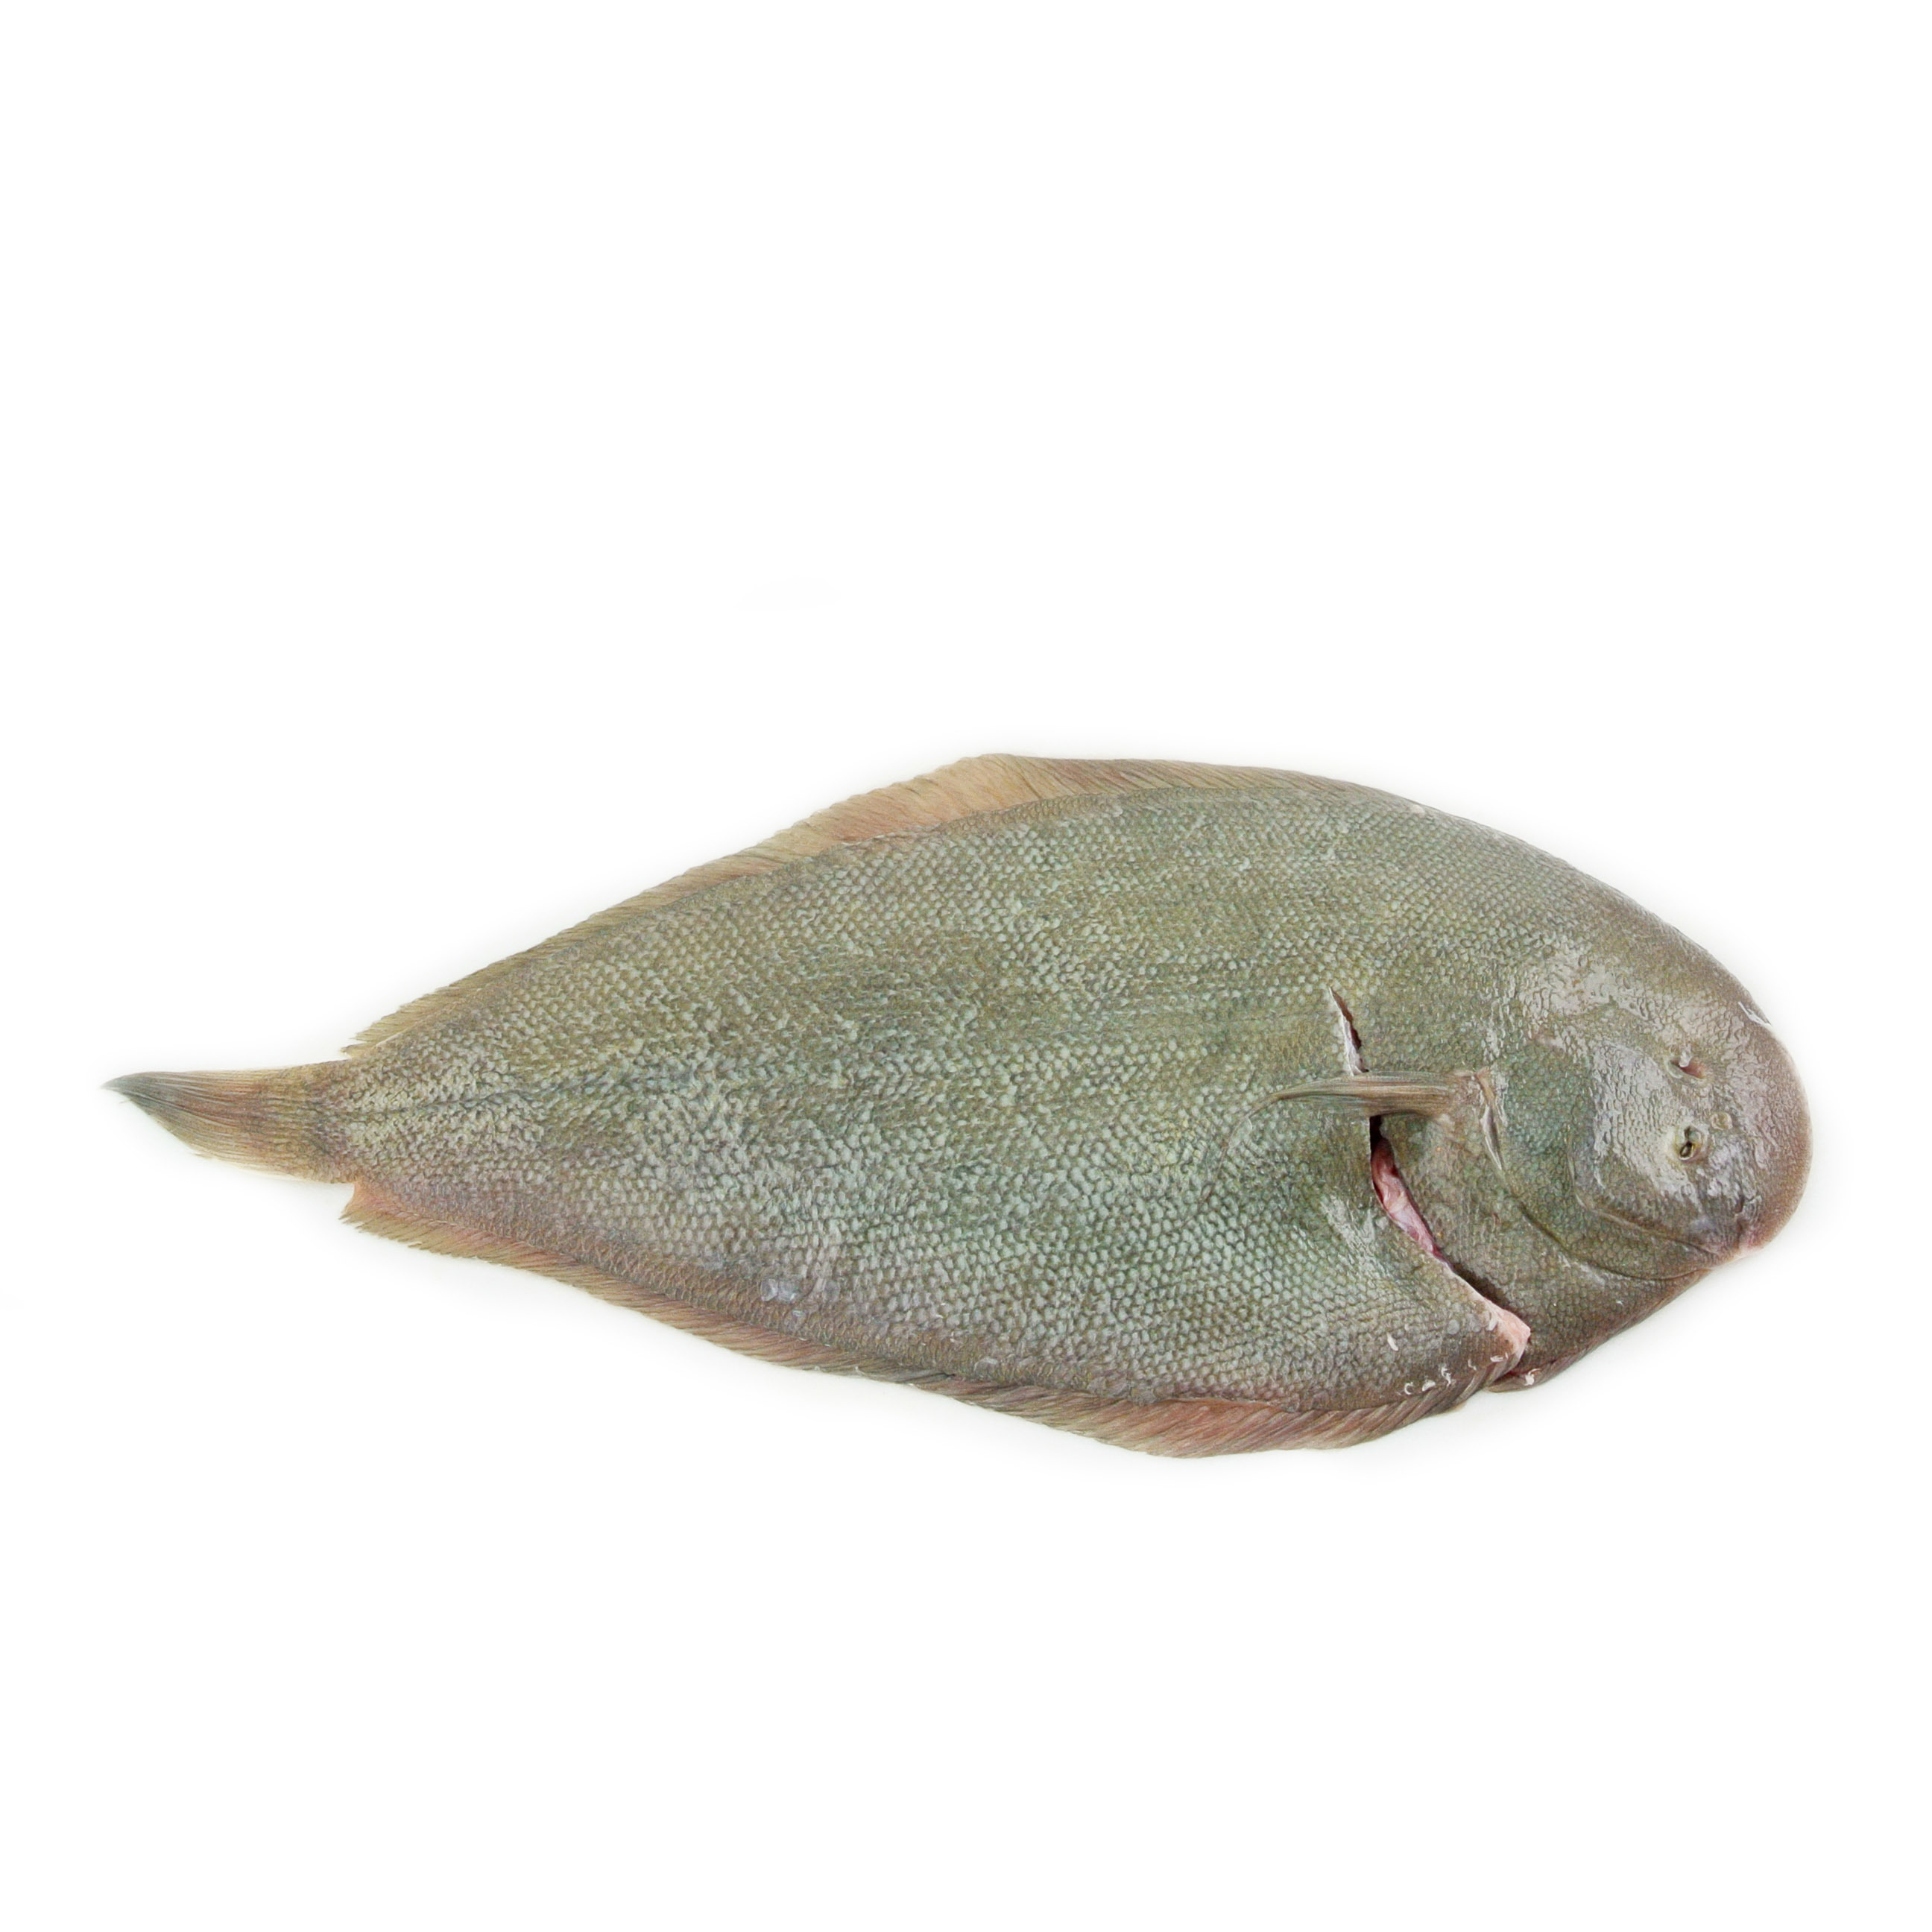 紐西蘭原條野生捕獲龍脷魚(Sole) - 已去鰓及內臟